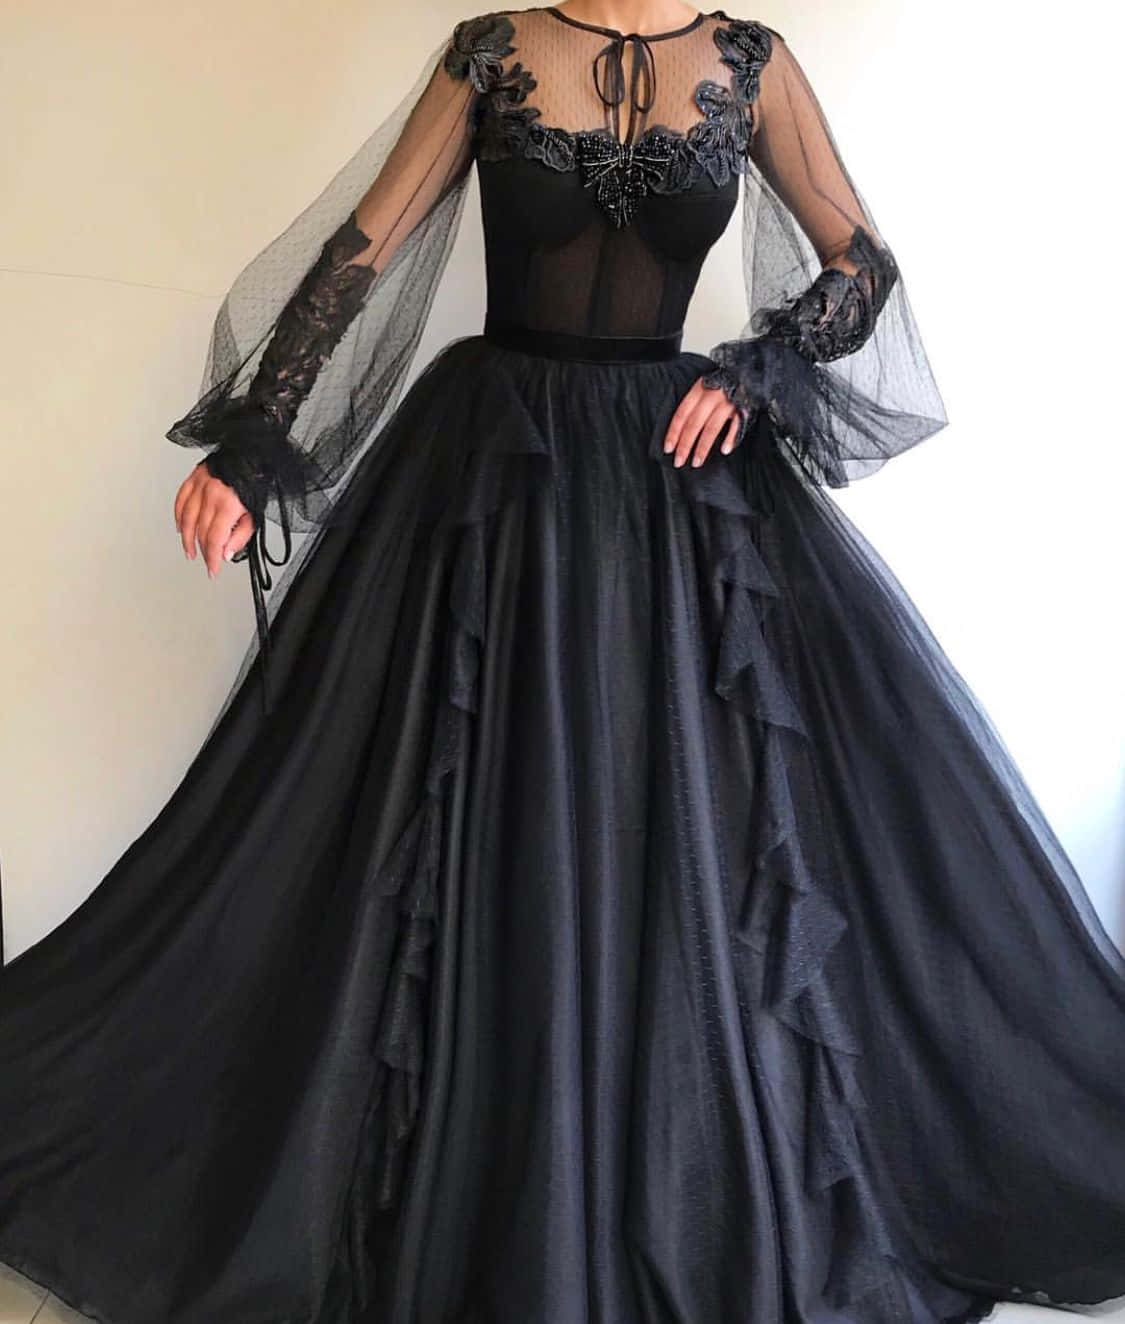 En kvinde iført en sort kjole med blonderærmer